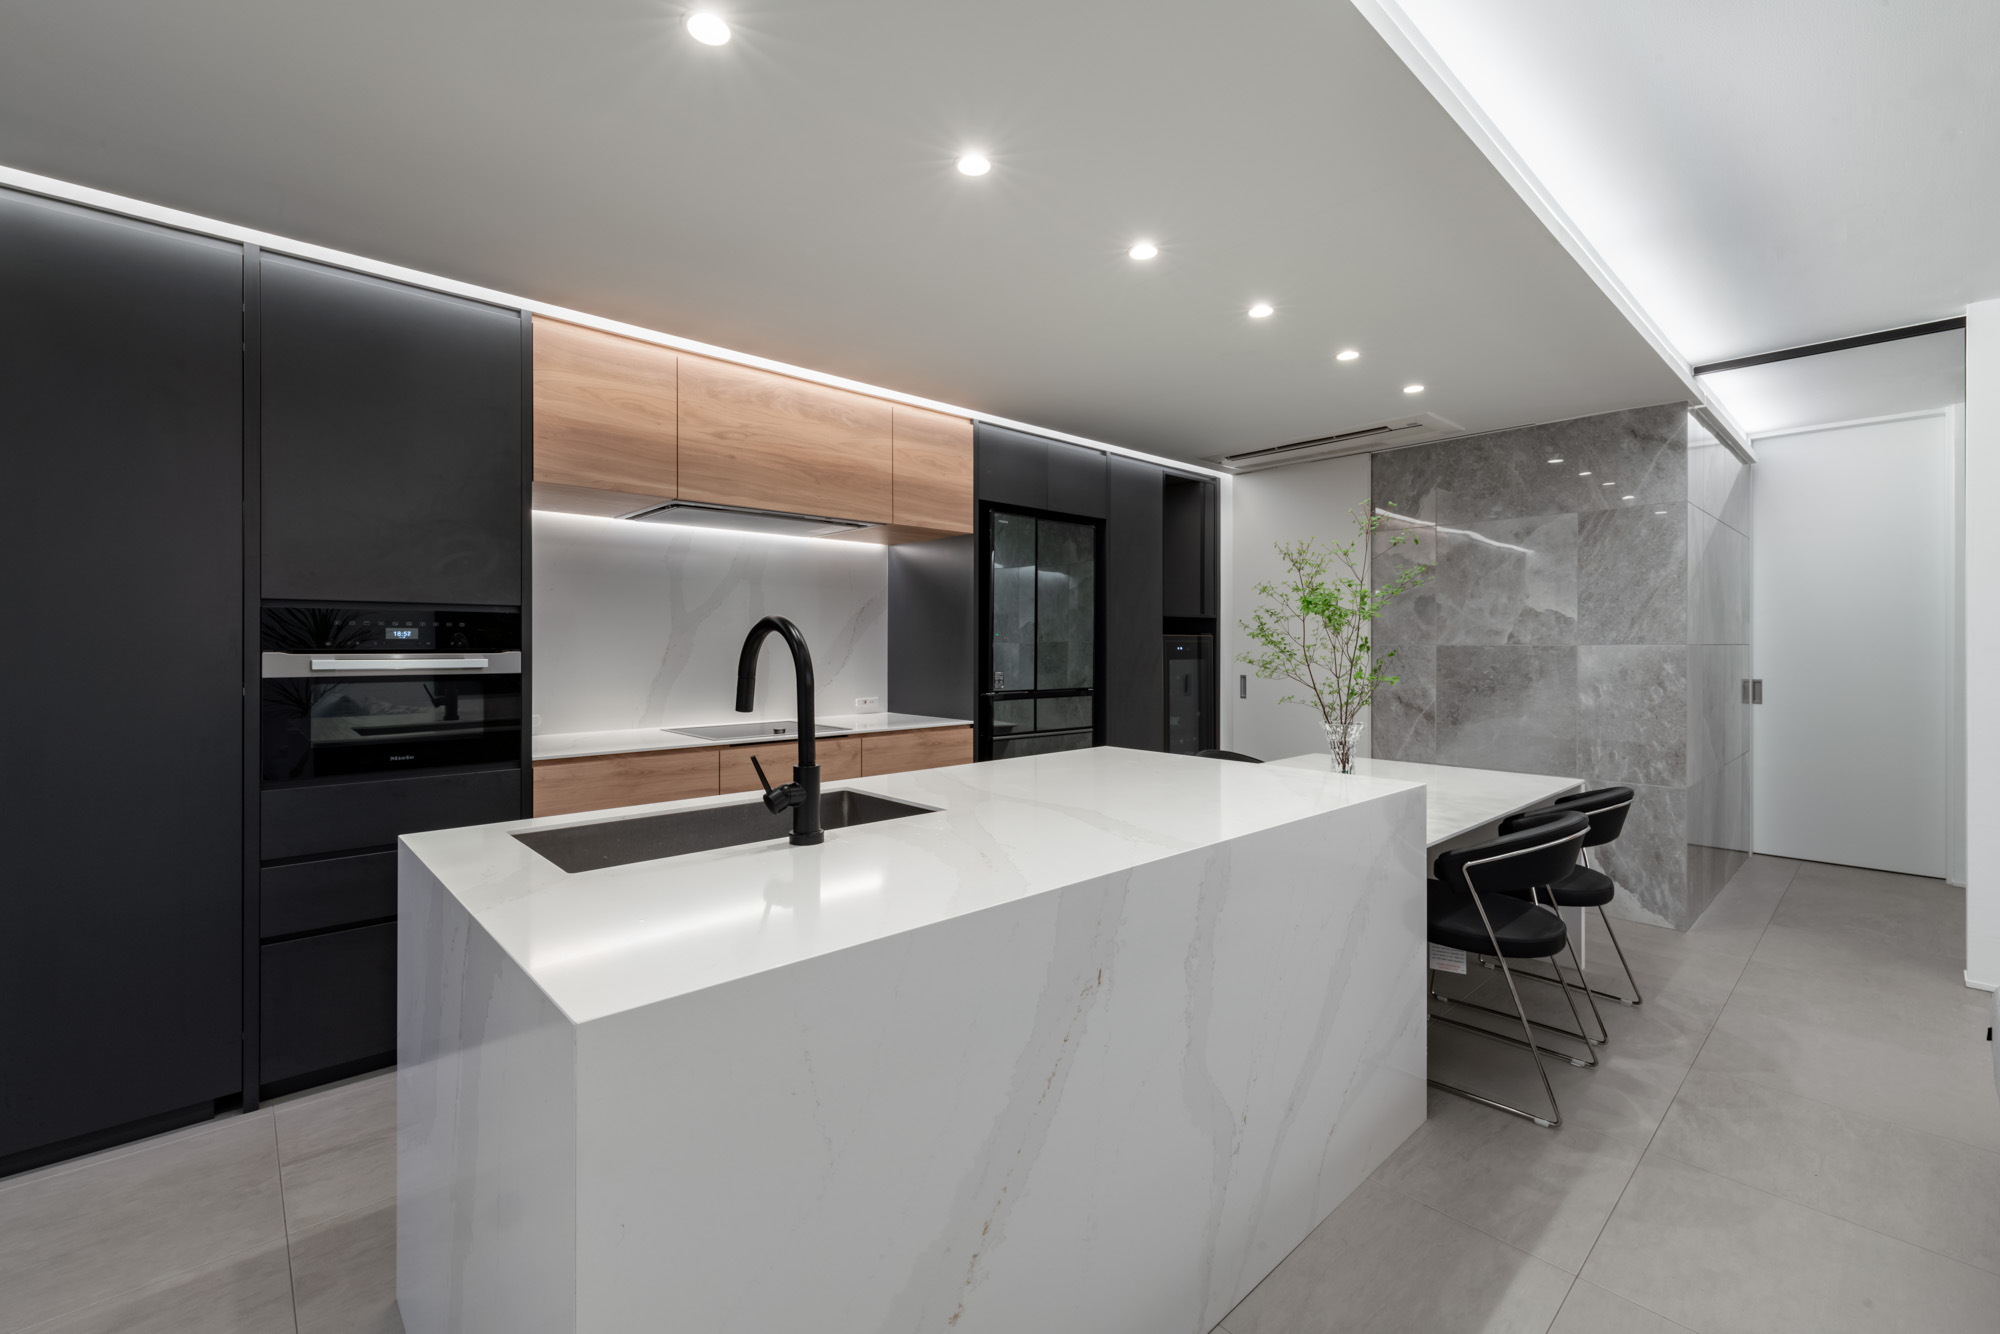 キッチンとダイニングを照らすように天井に一直線にダウンライトが設けられた様子・デザイン住宅